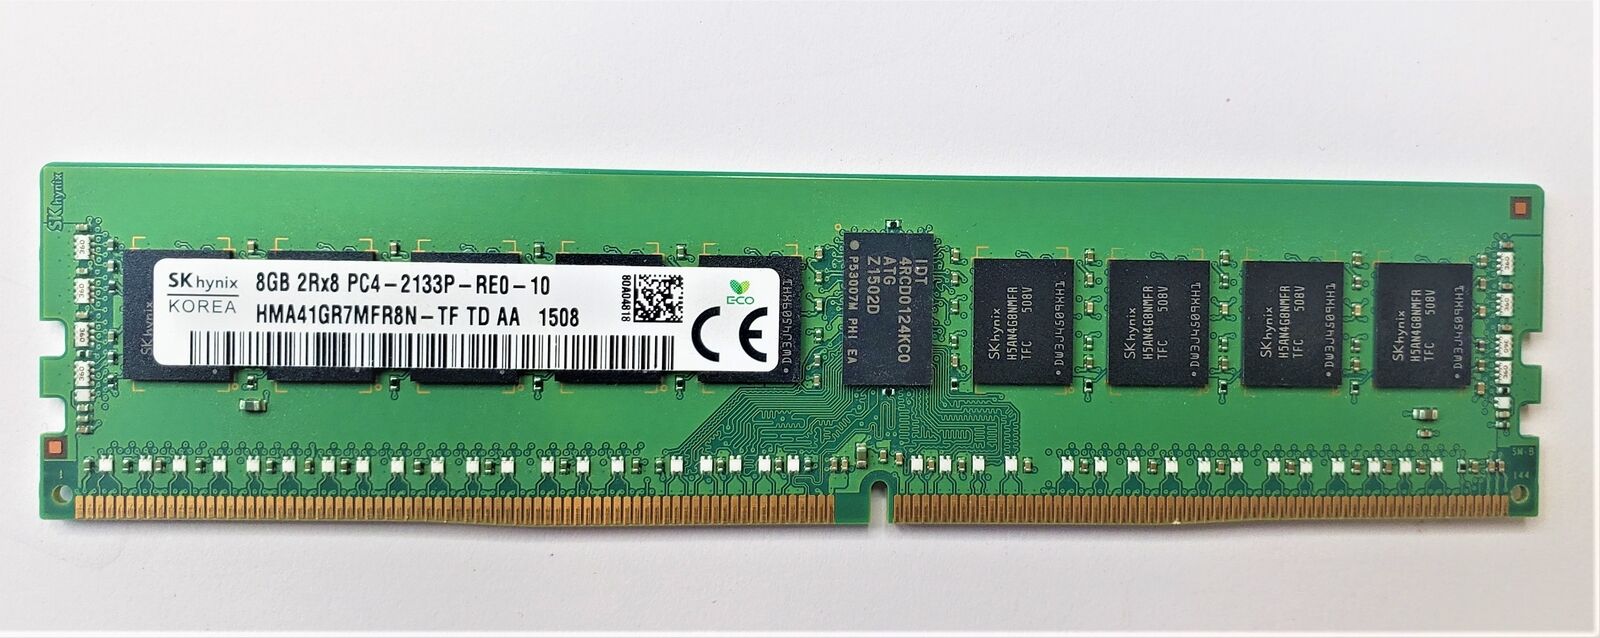 Samsung Skhynix 8GB 2Rx8 DRR4 Memory Card PC4-2133P-RE0-10 HMA41GR7MFR8N-TF1508